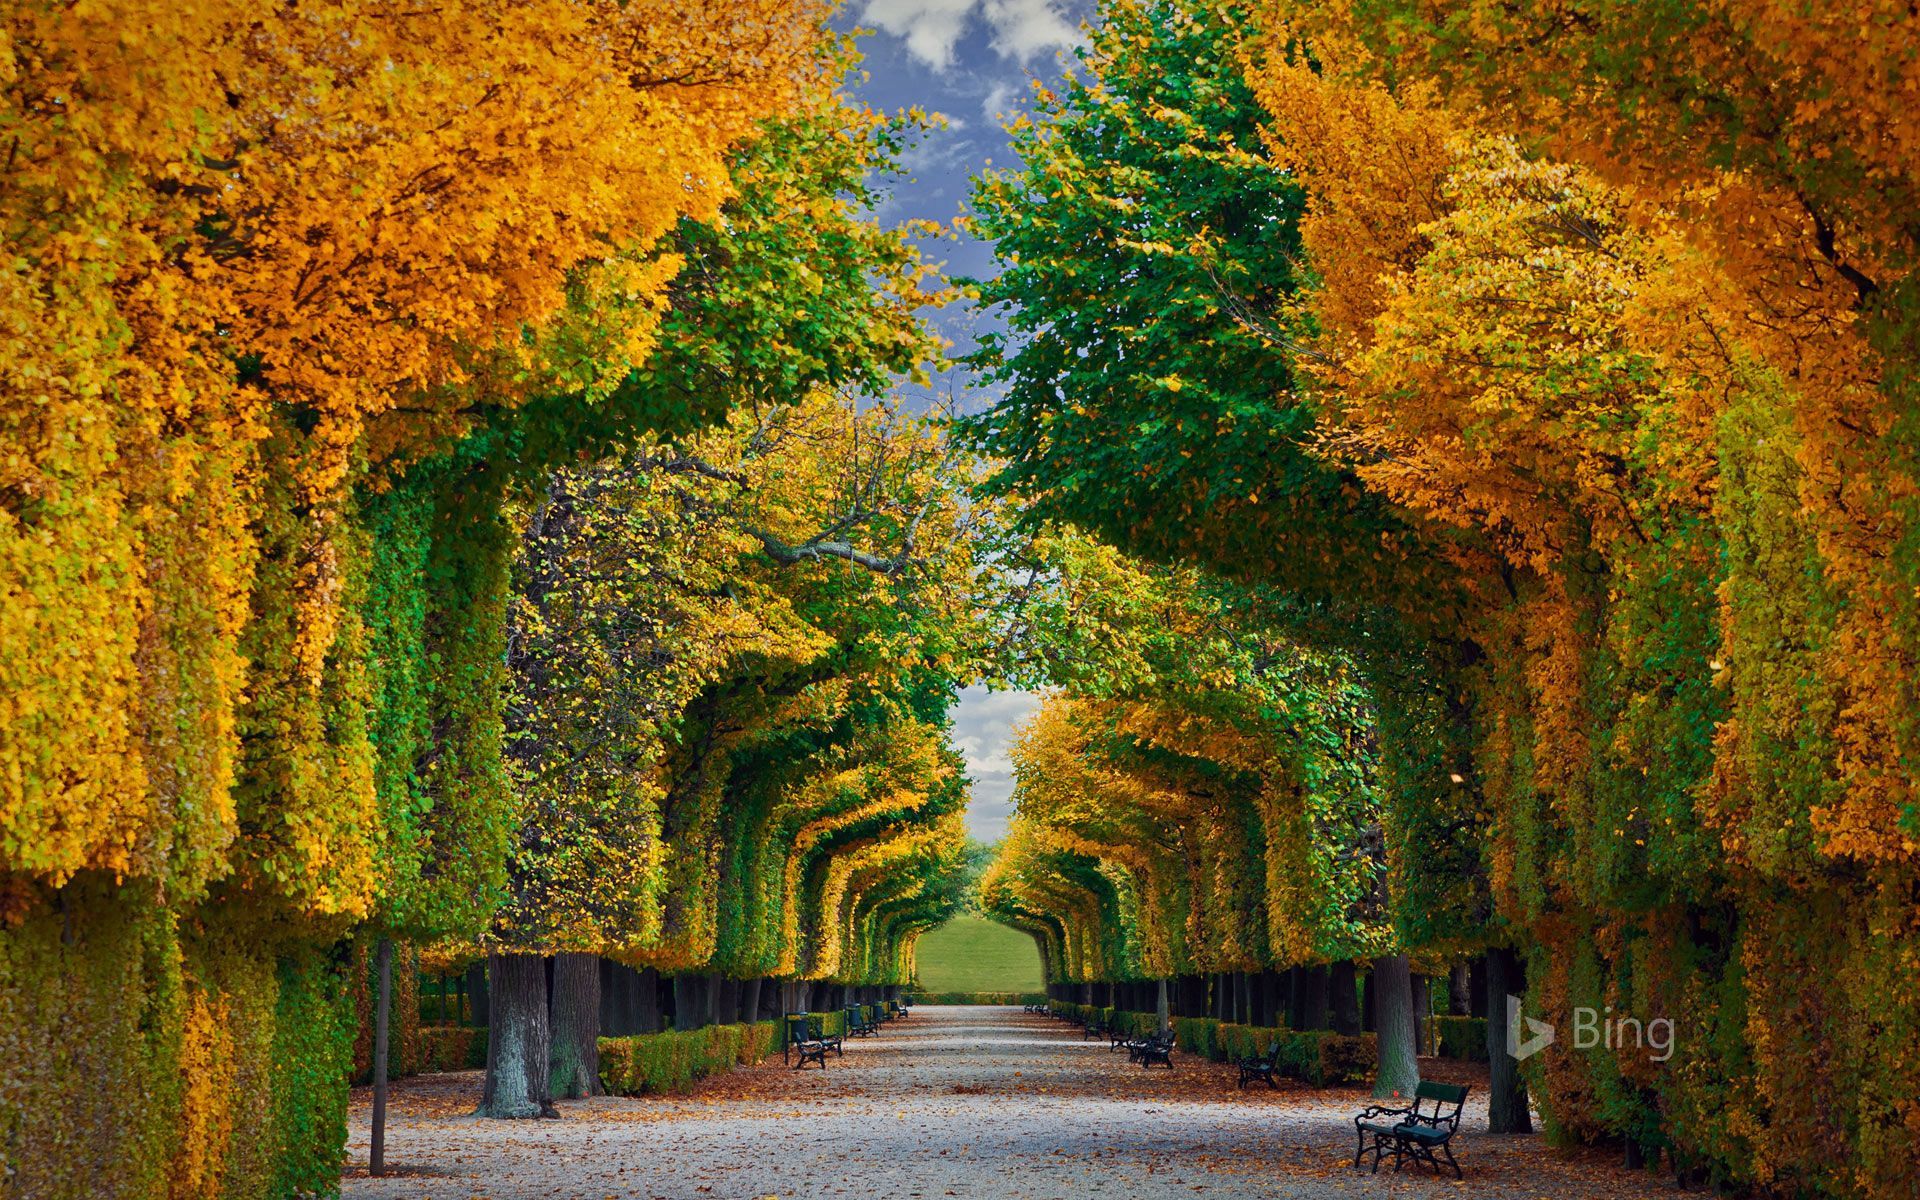 Bing Autumn Landscapes Image Wallpaper. Autumn landscape, Nature photography, Landscape